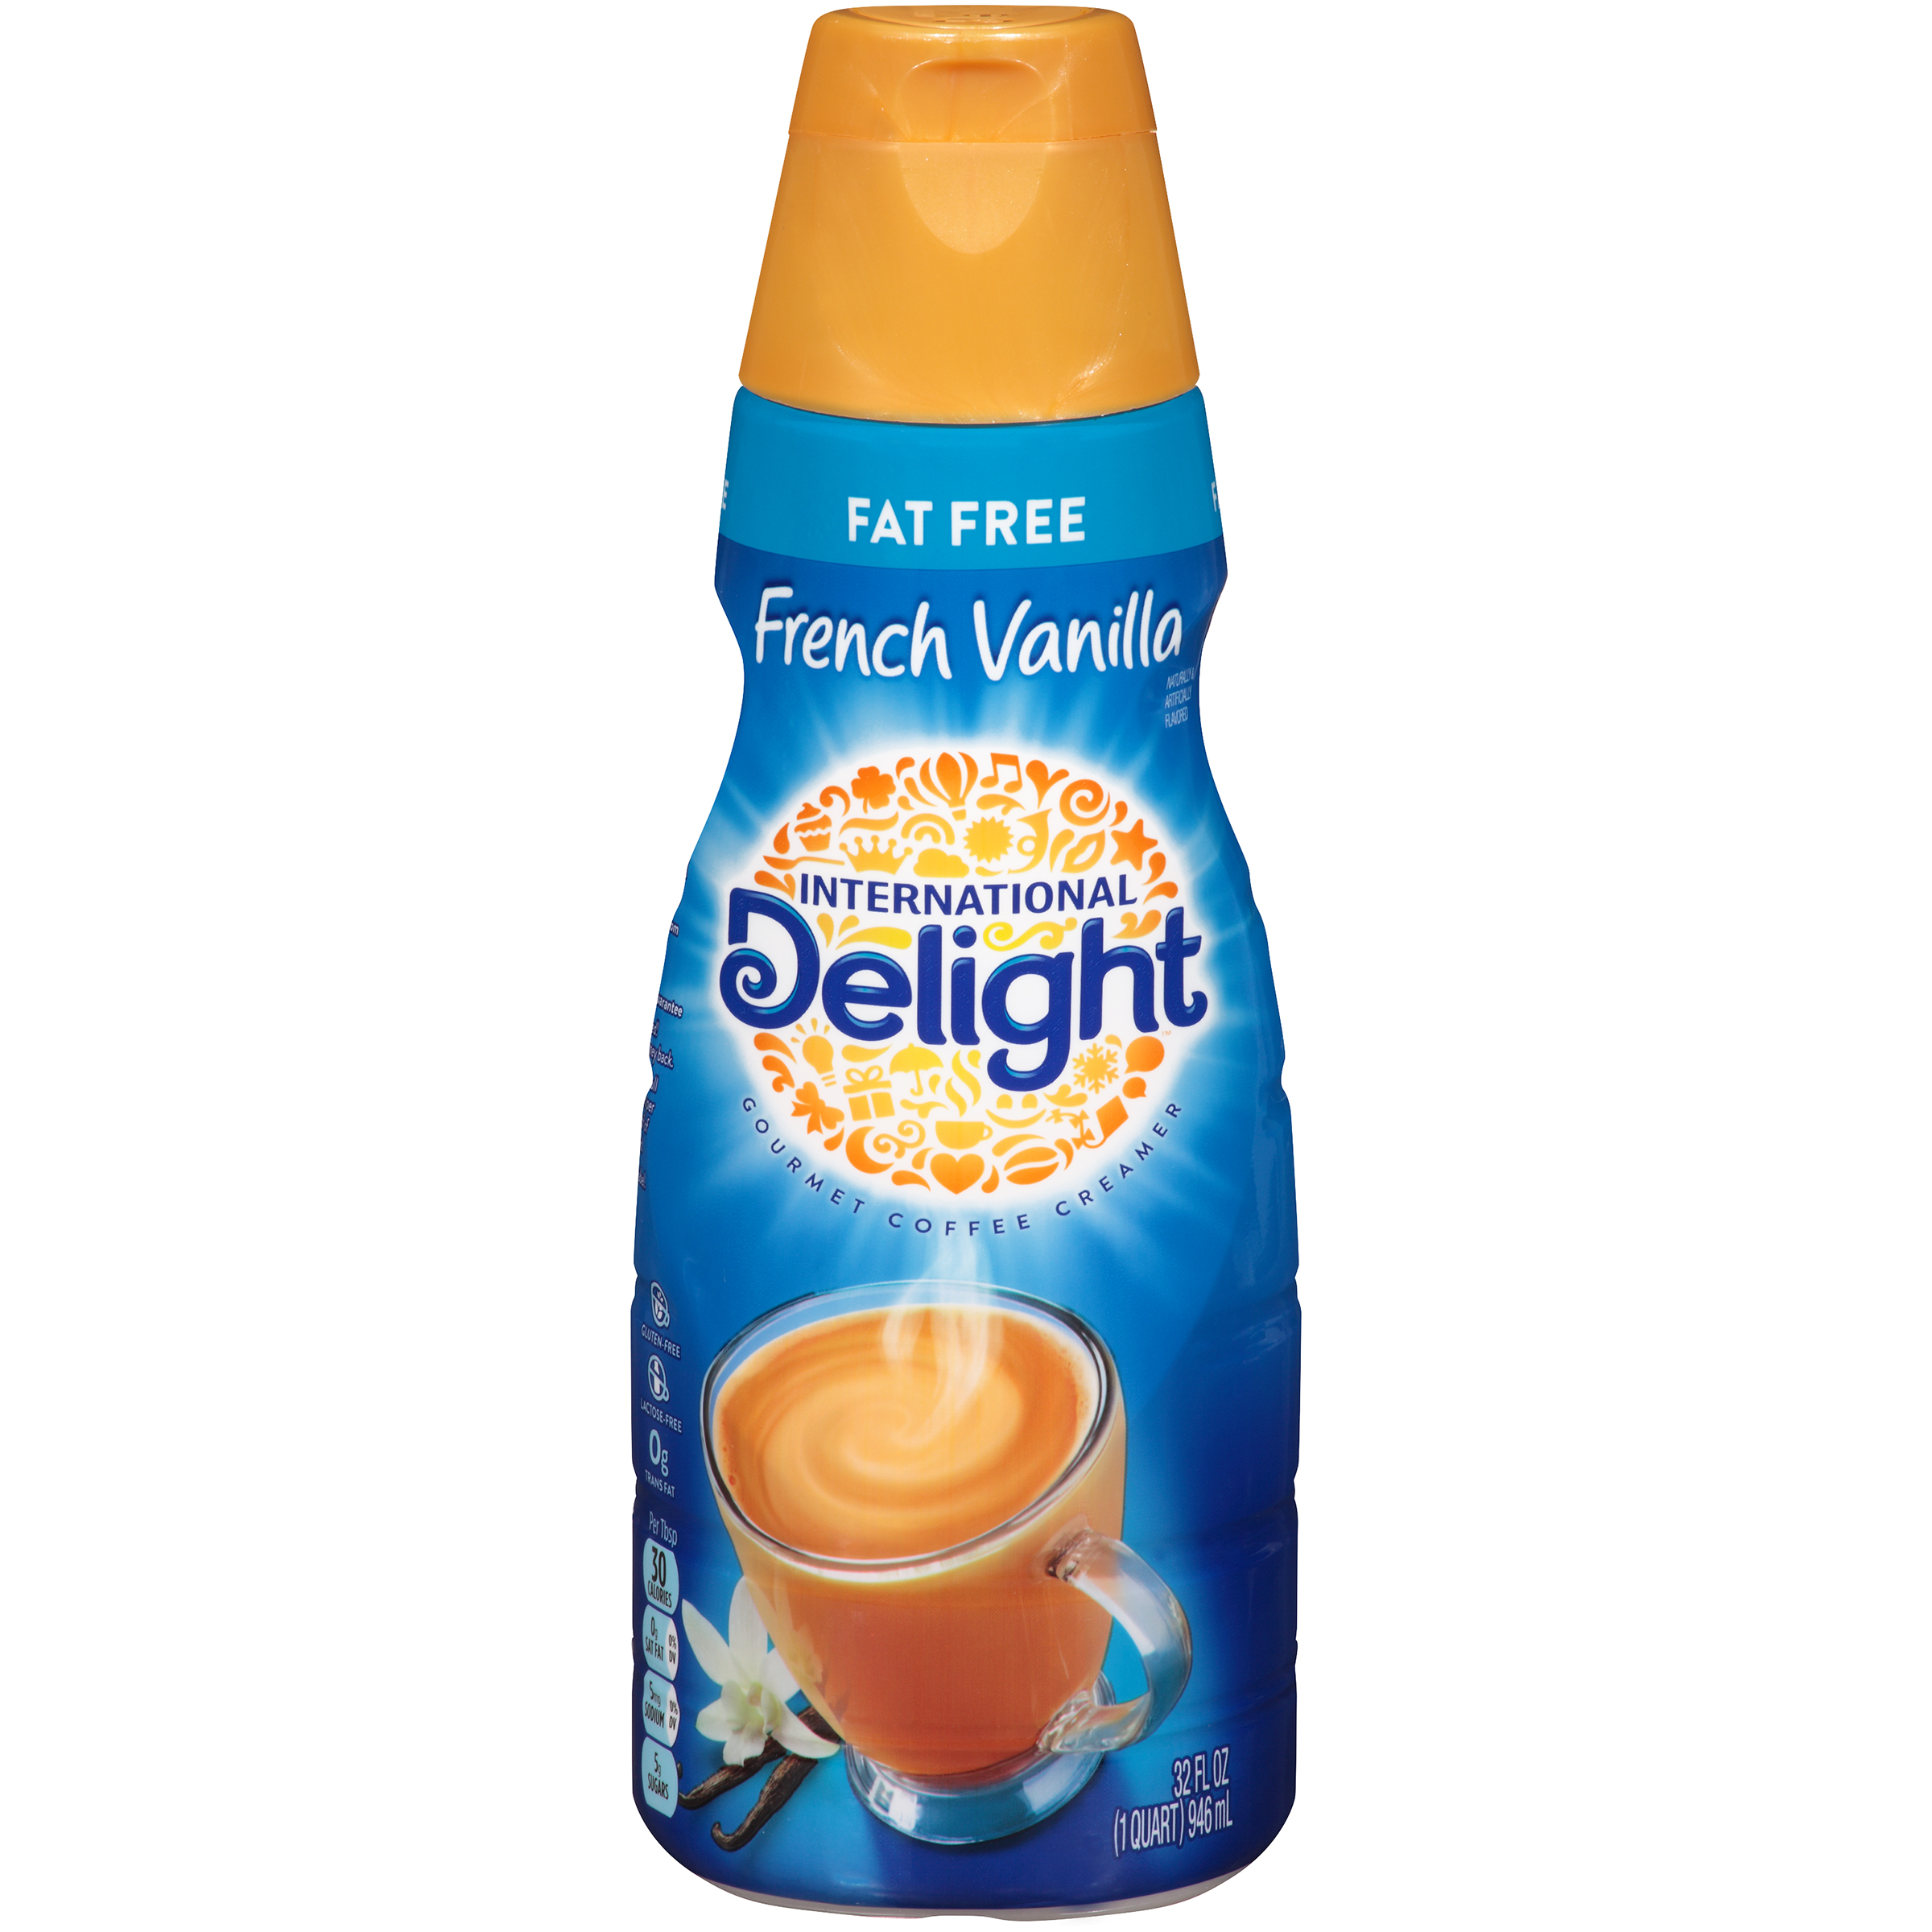 International Delight French Vanilla Creamer.